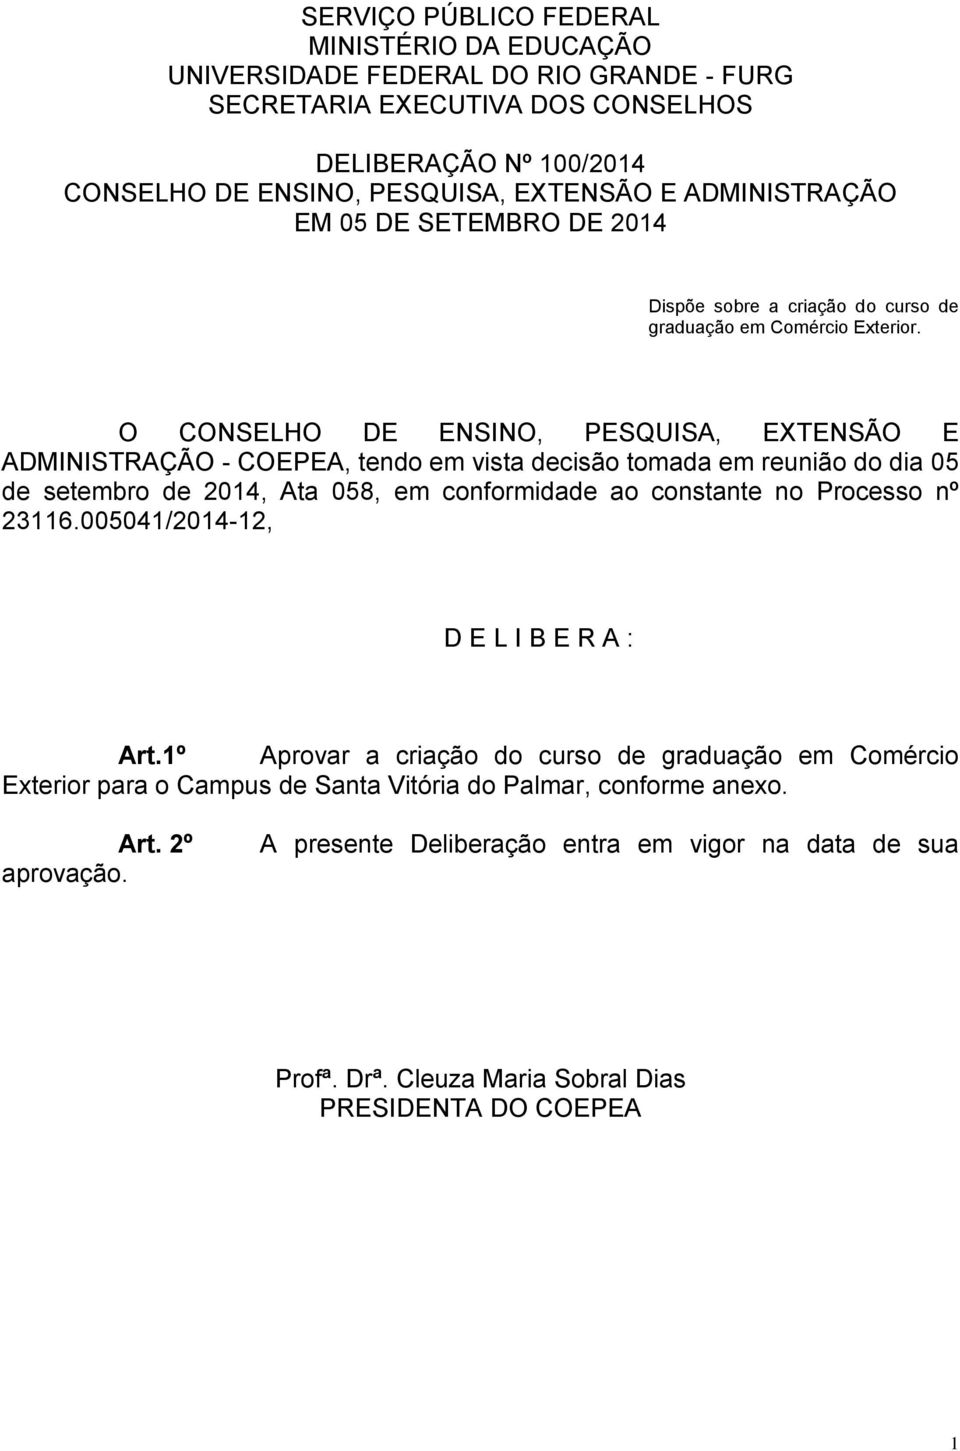 O CONSELHO DE ENSINO, PESQUISA, EXTENSÃO E ADMINISTRAÇÃO - COEPEA, tendo em vista decisão tomada em reunião do dia 05 de setembro de 2014, Ata 058, em conformidade ao constante no Processo nº